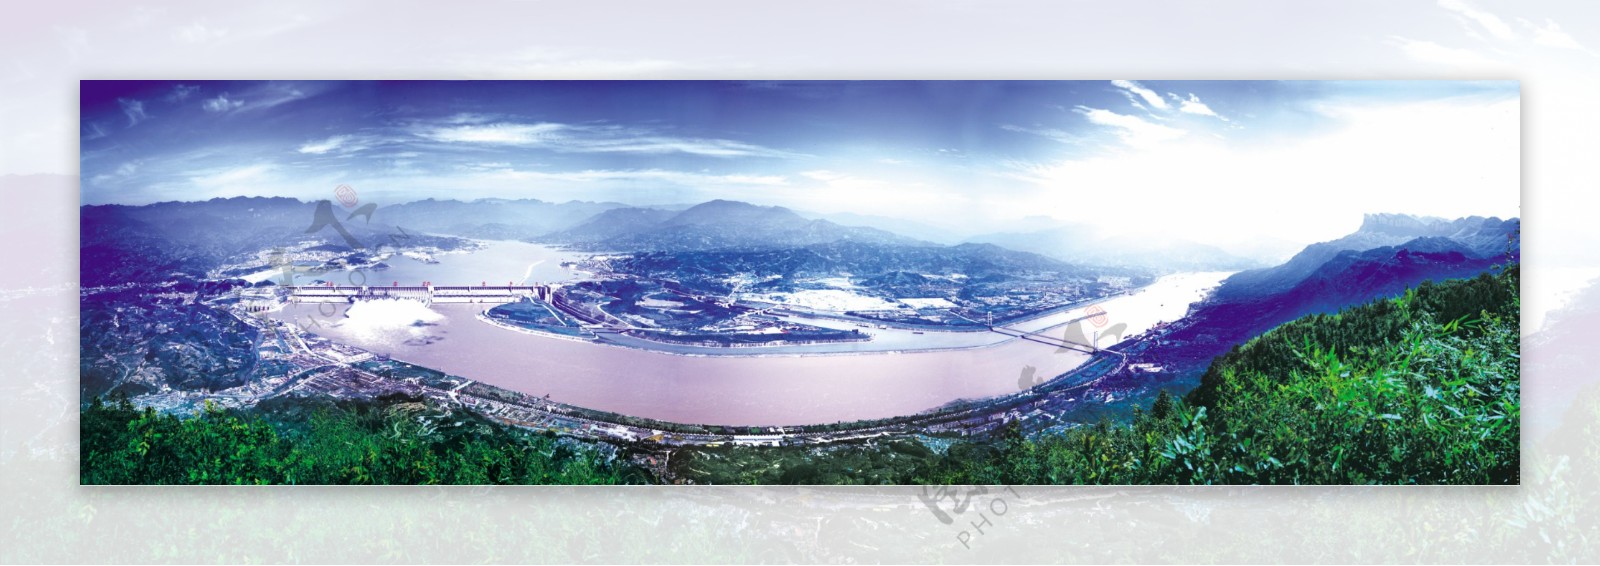 三峡大坝全景图片